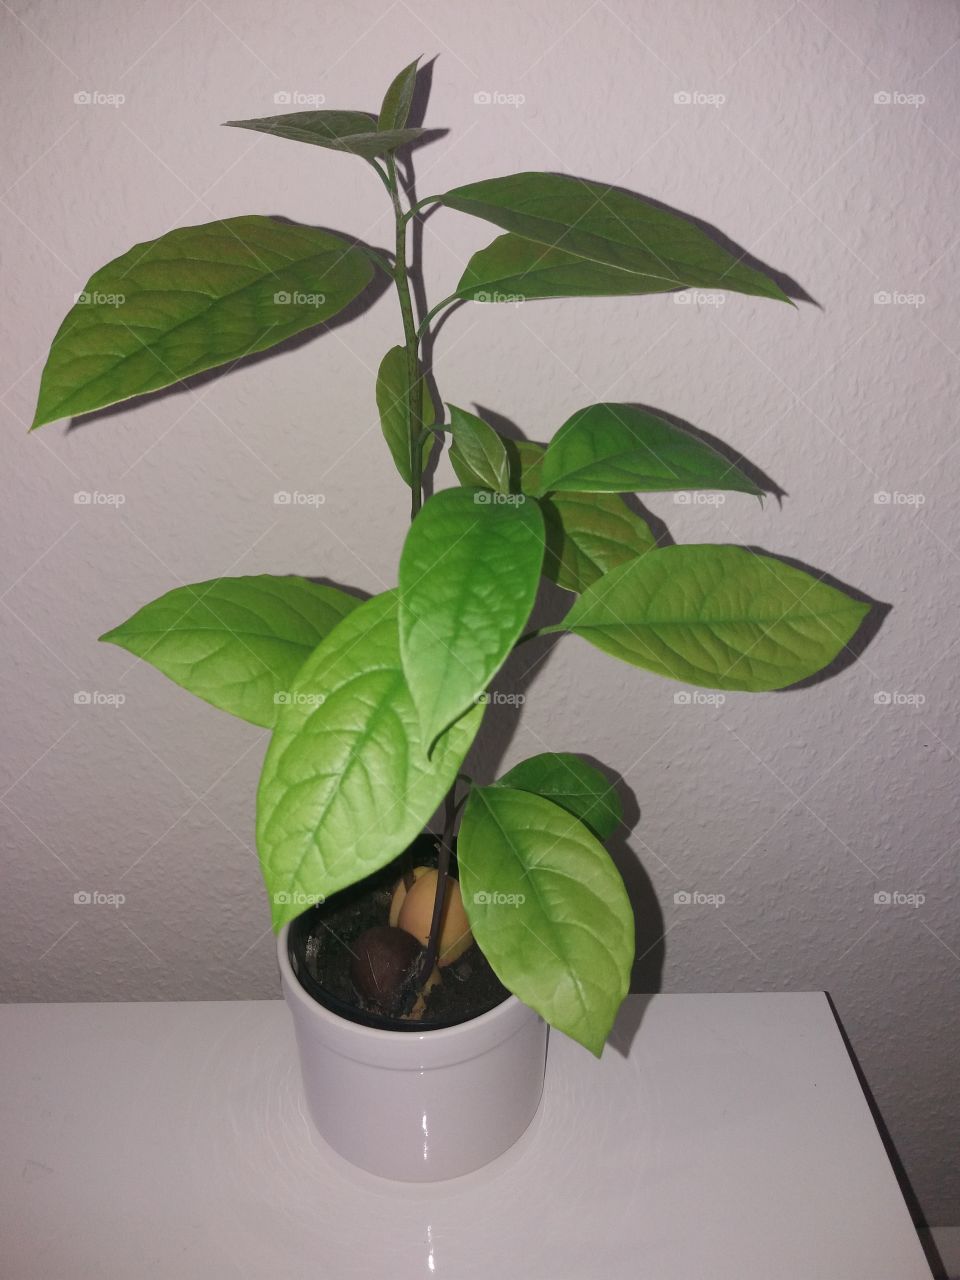 avacado plant